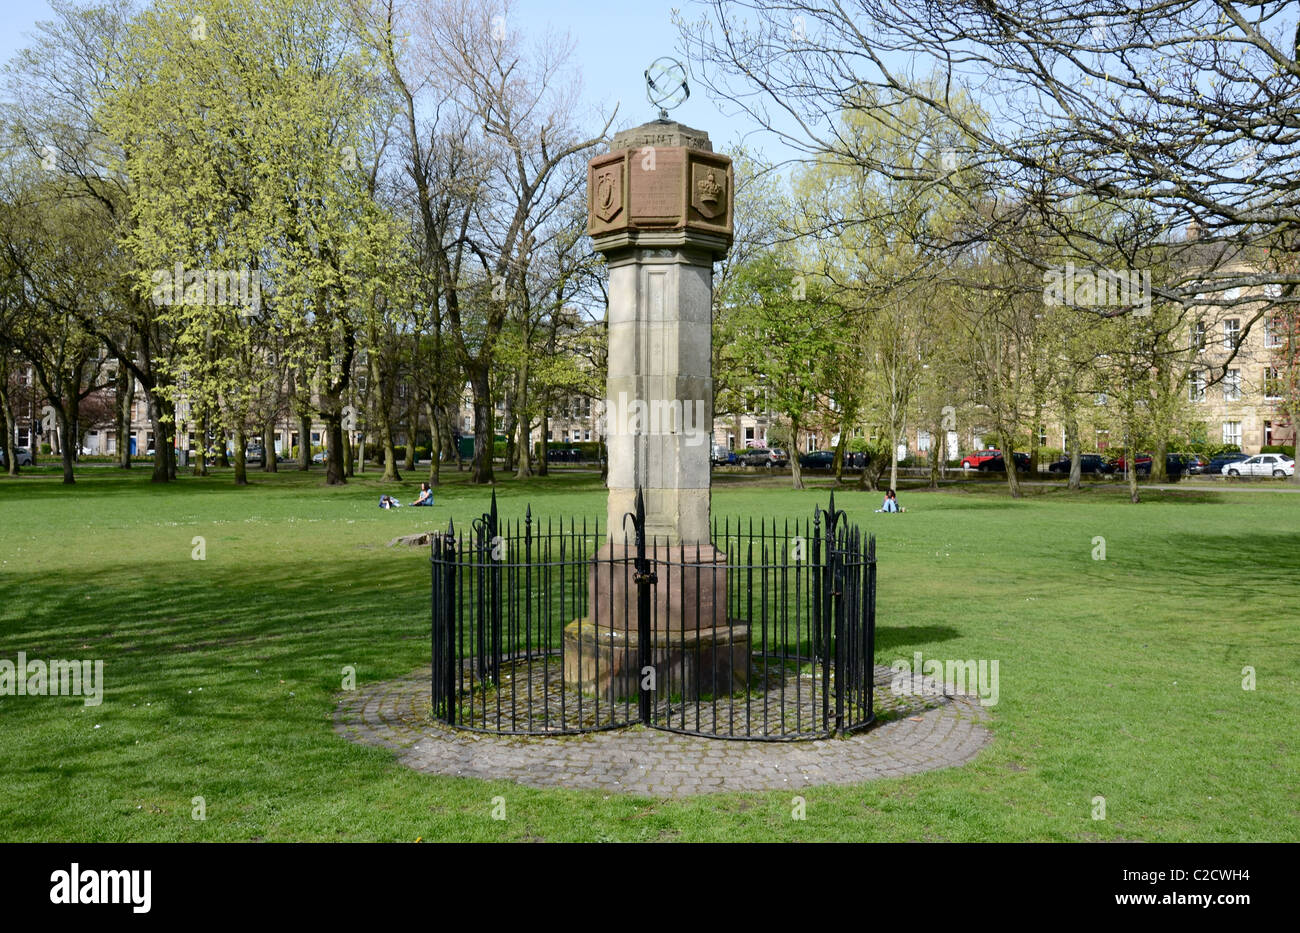 Les piliers du monument des maçons et Prince Albert Victor cadran solaire, un rappel de l'Edimbourg 1886 Exposition Internationale. Banque D'Images